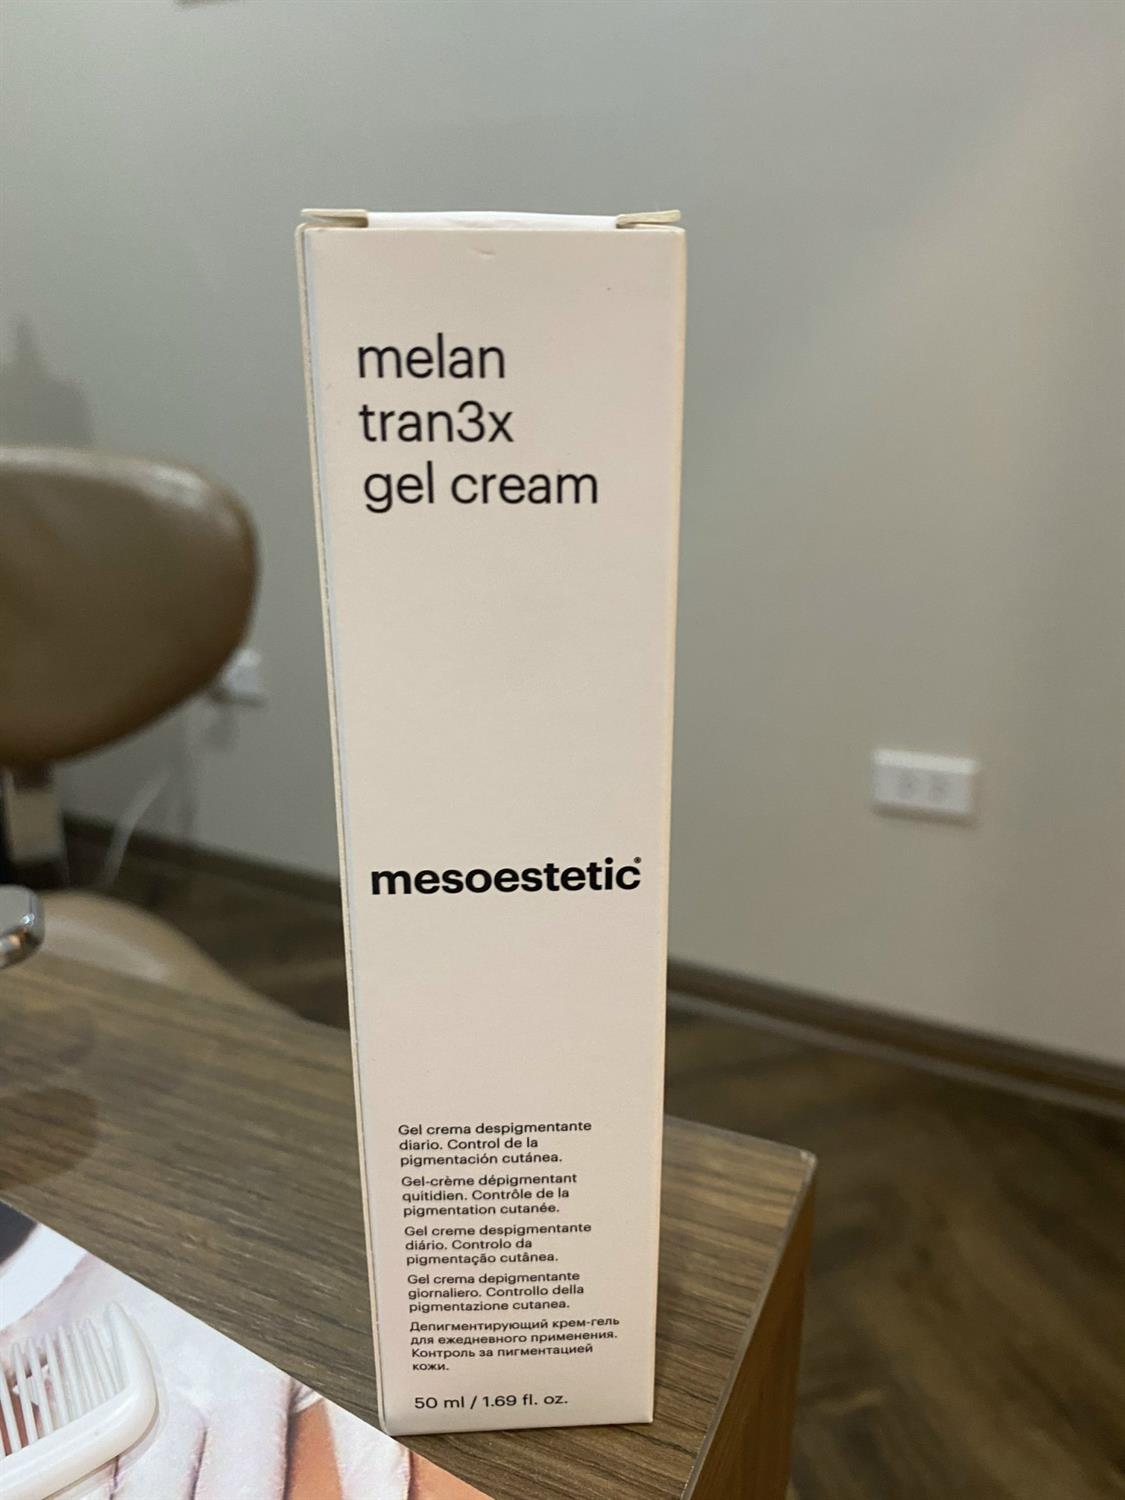 Mesoestetic - MelanTran3x Gel Cream 